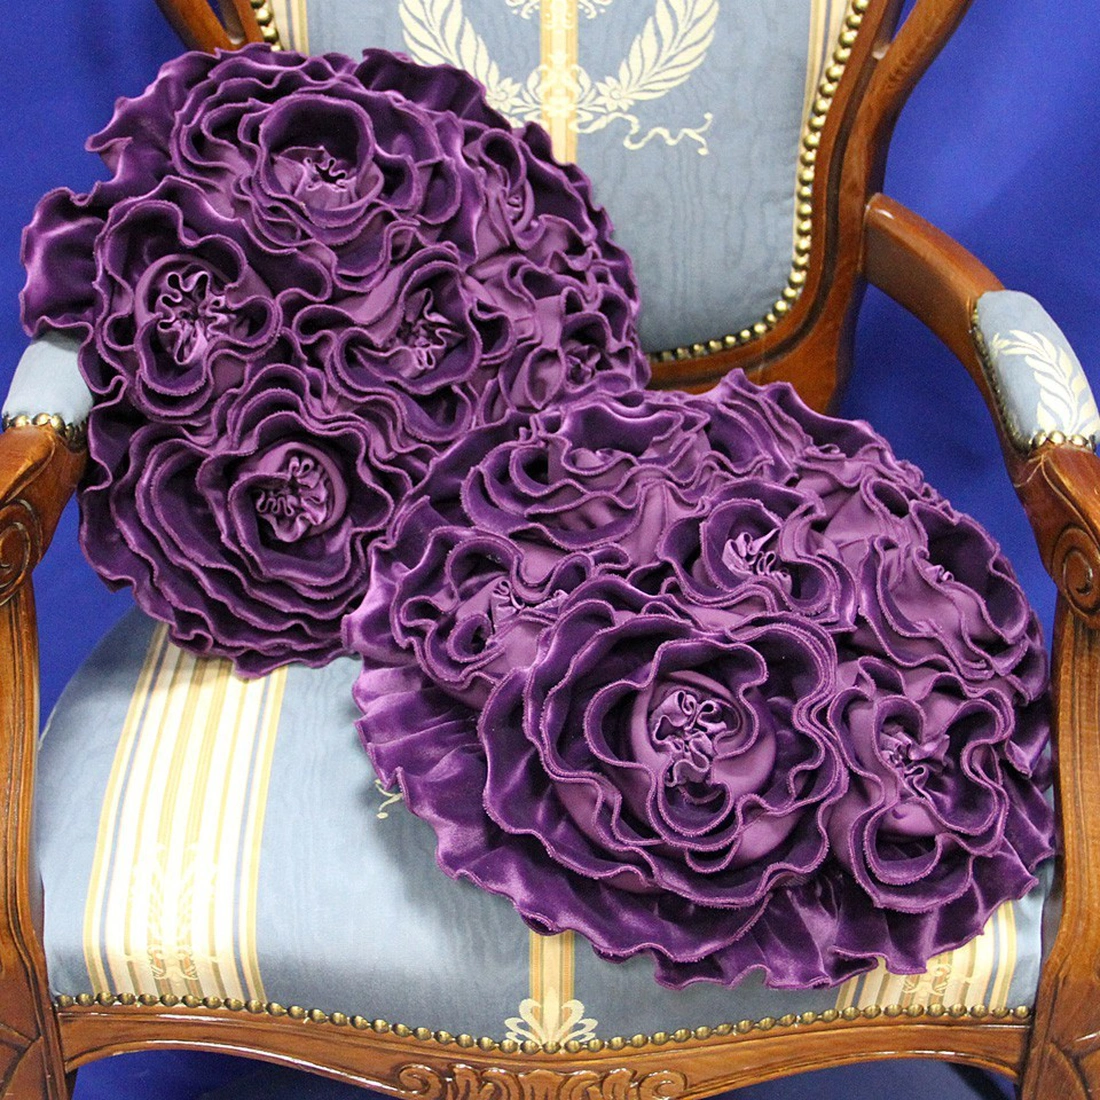 Кружево, рюши, цветочный принт, декор из текстильных элементов для подушек помогут привнести романтическое настроение